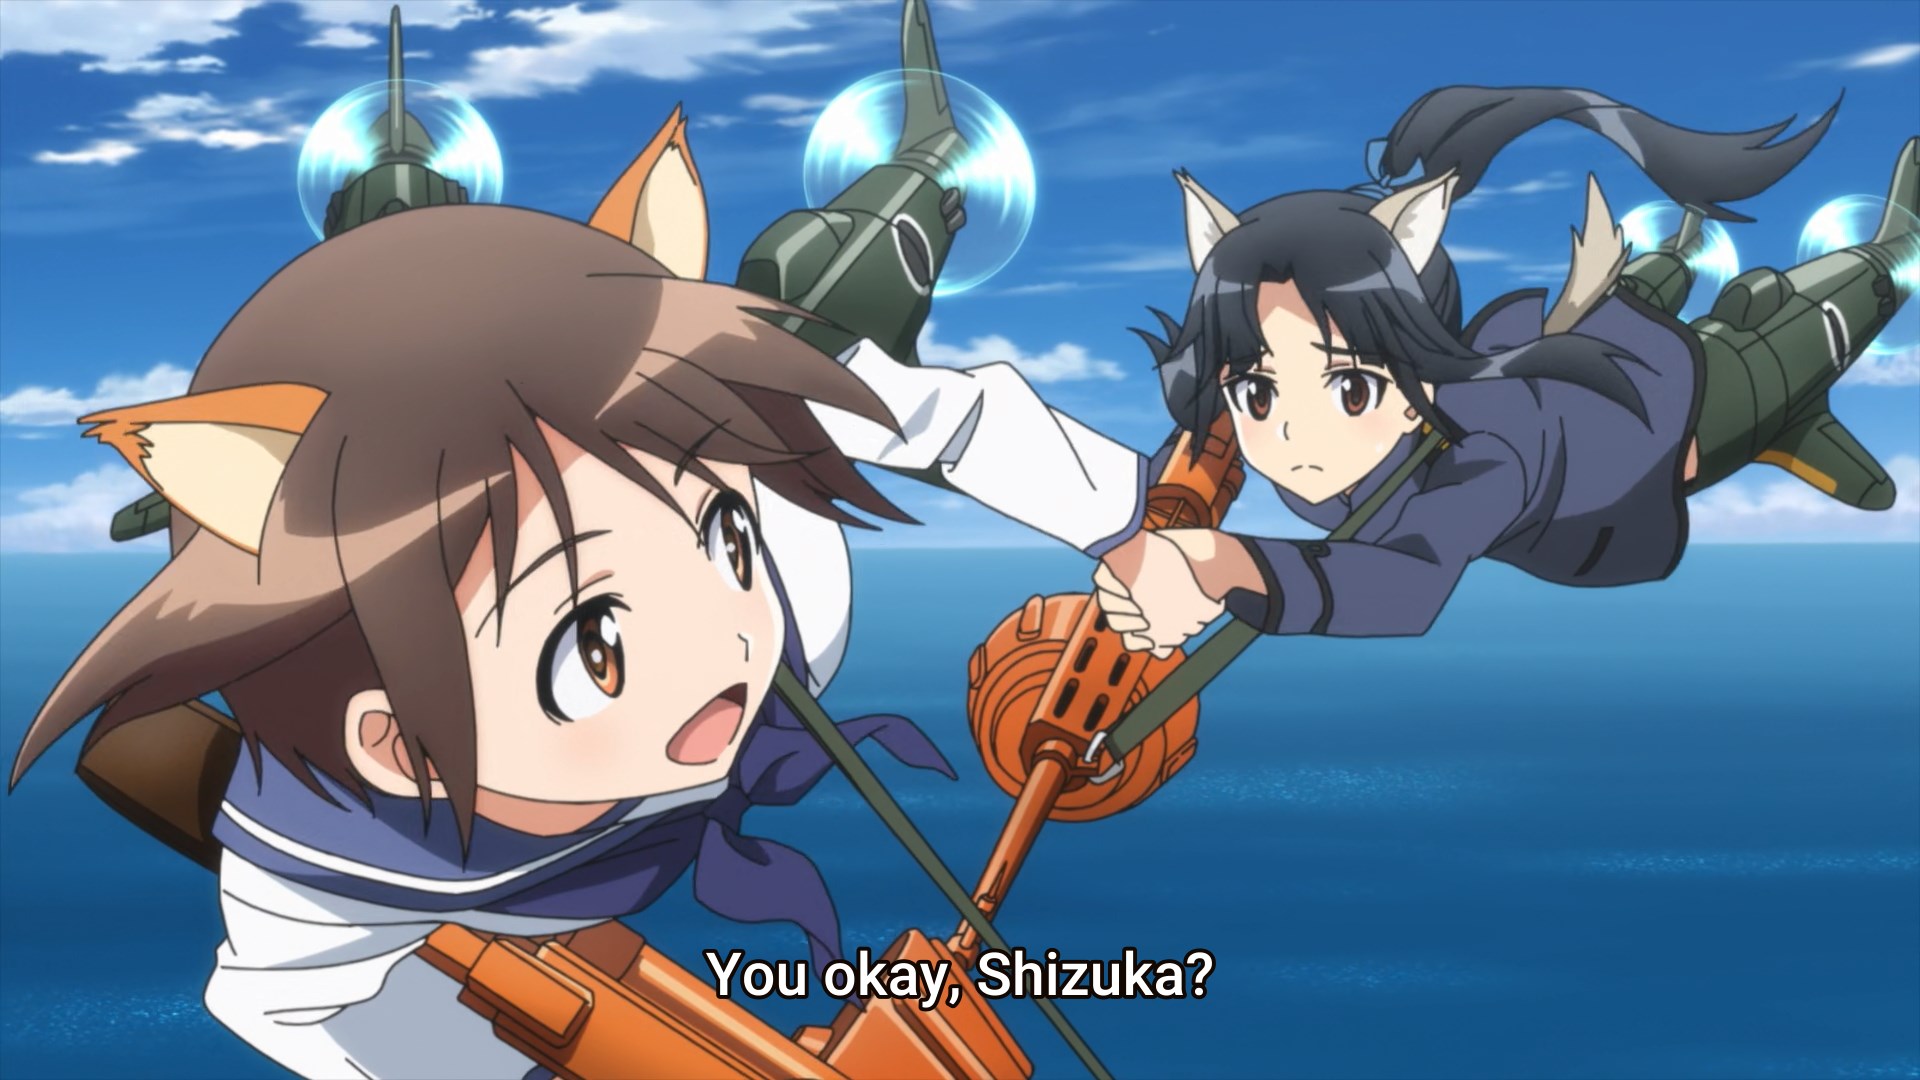 Yoshika helps Shizuka